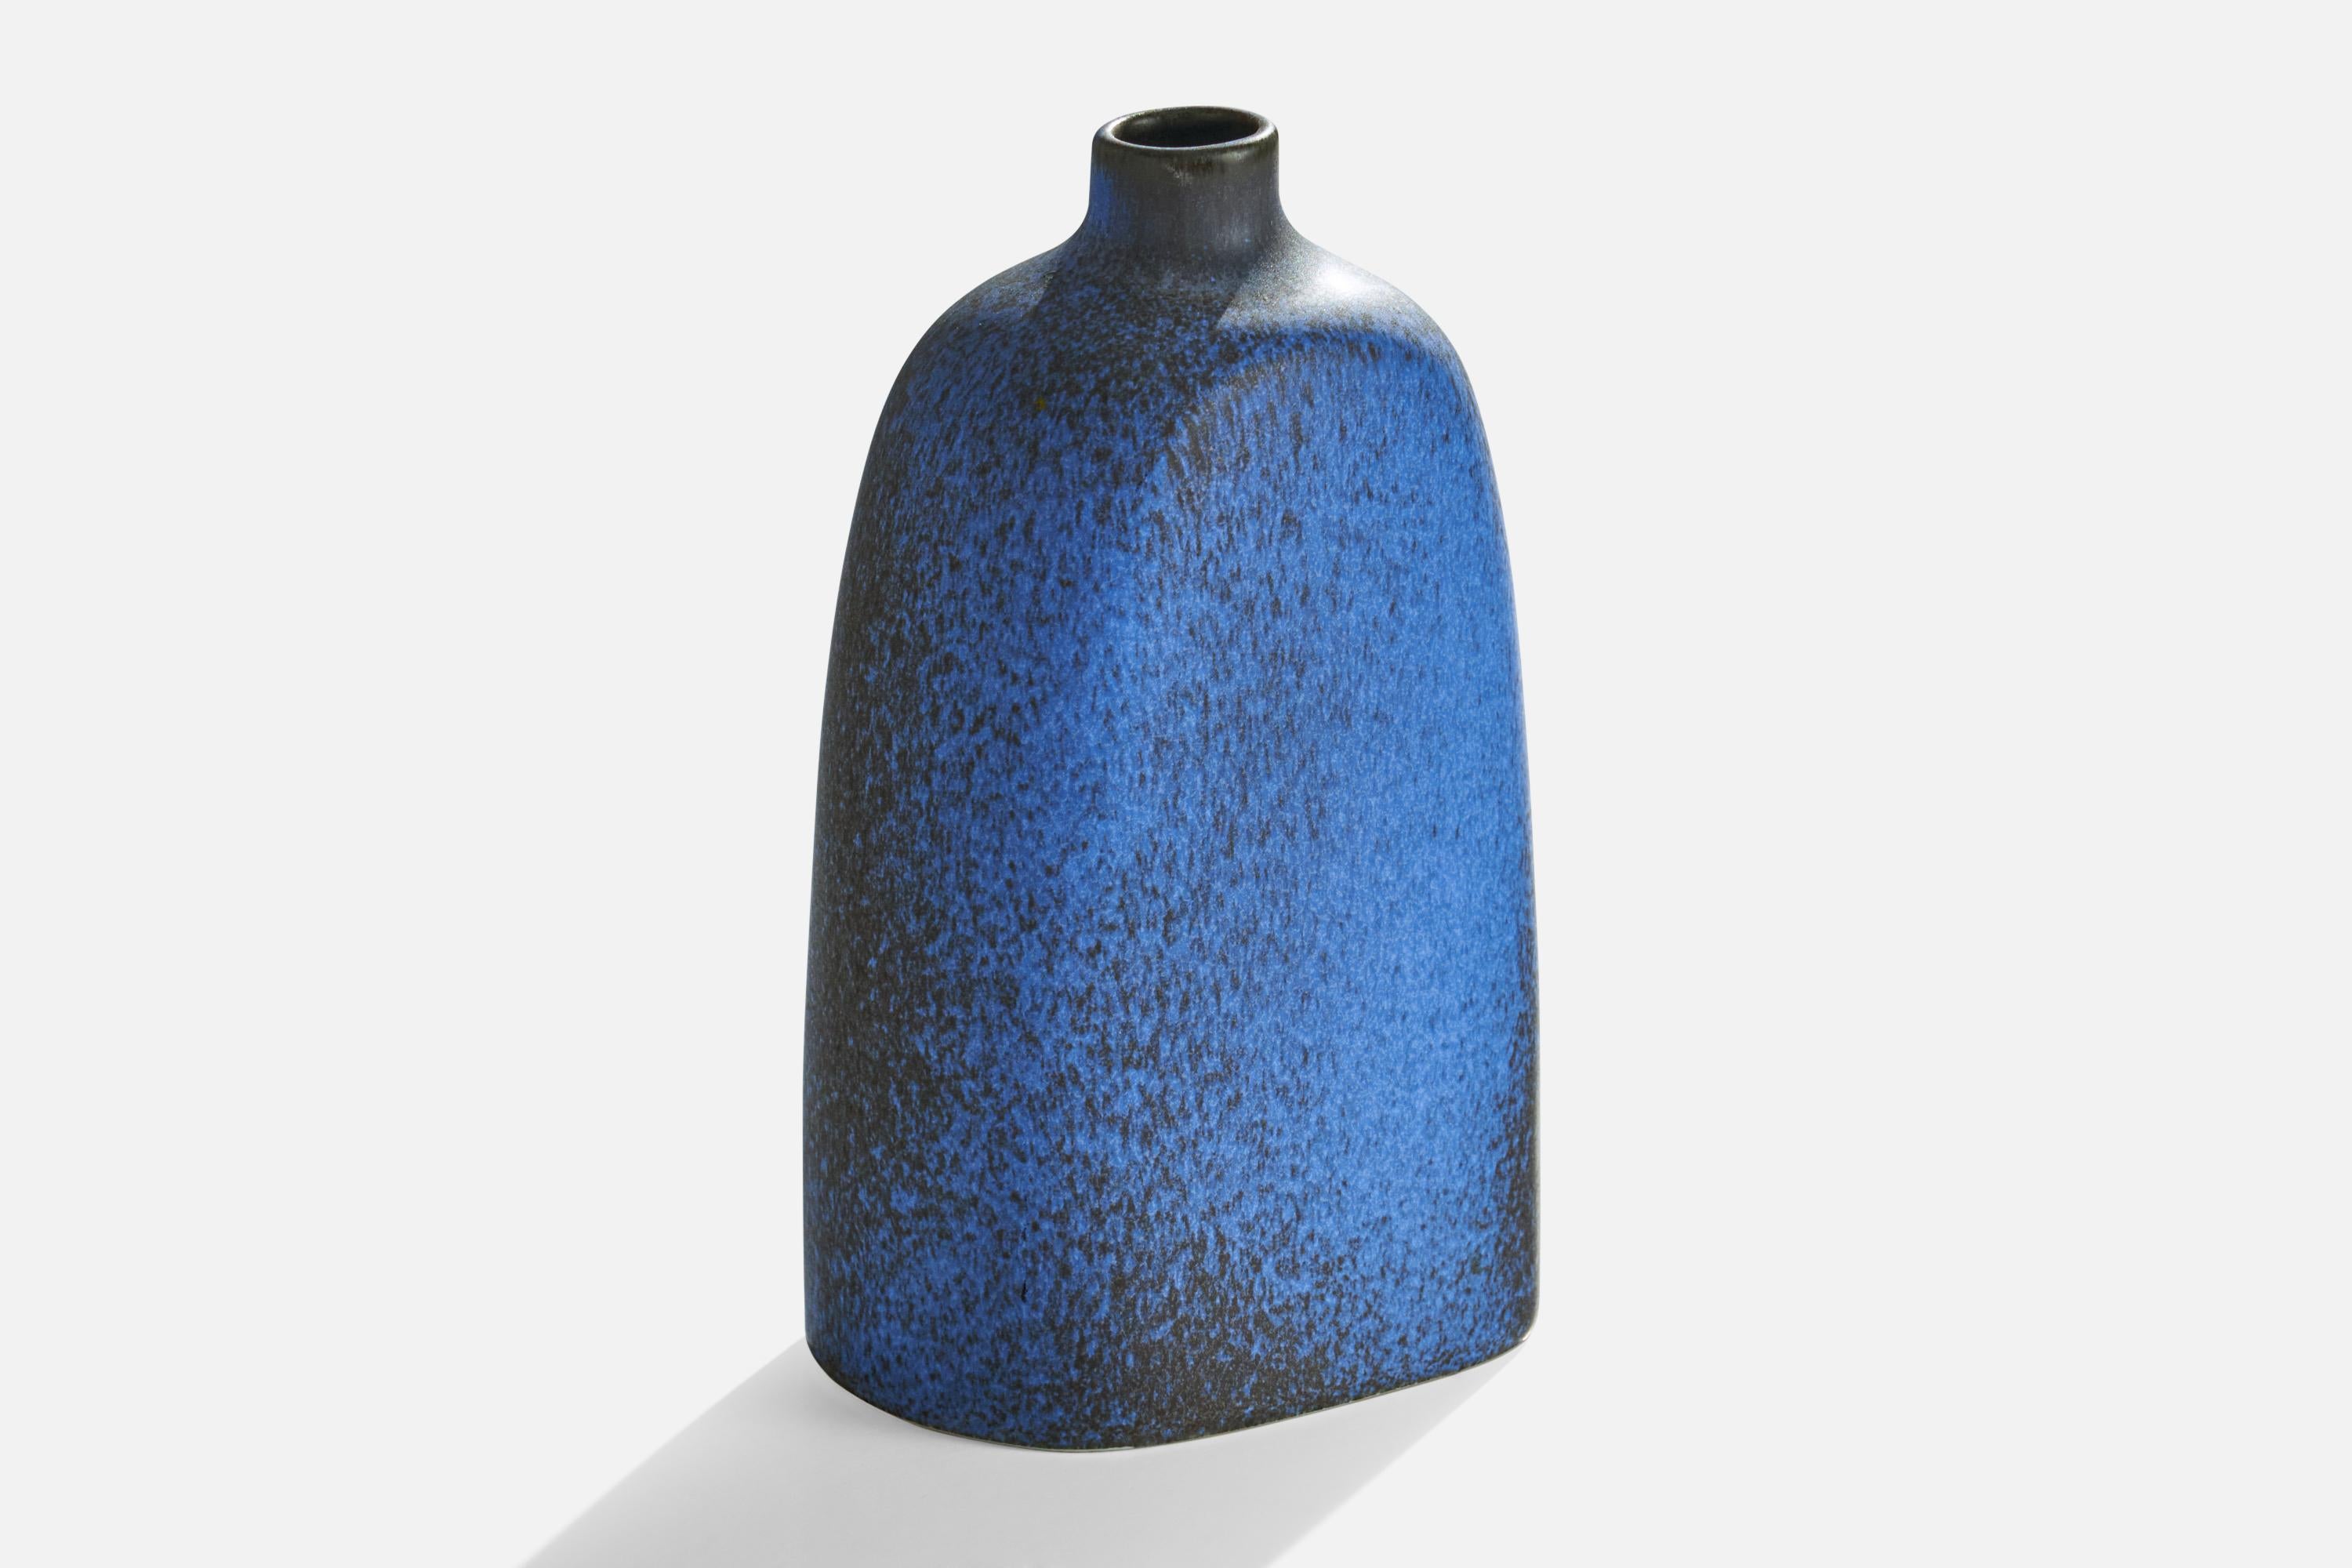 Vase en céramique émaillée bleue et grise conçu par Karin Björquist et produit par Gustavsberg, Suède, années 1950.